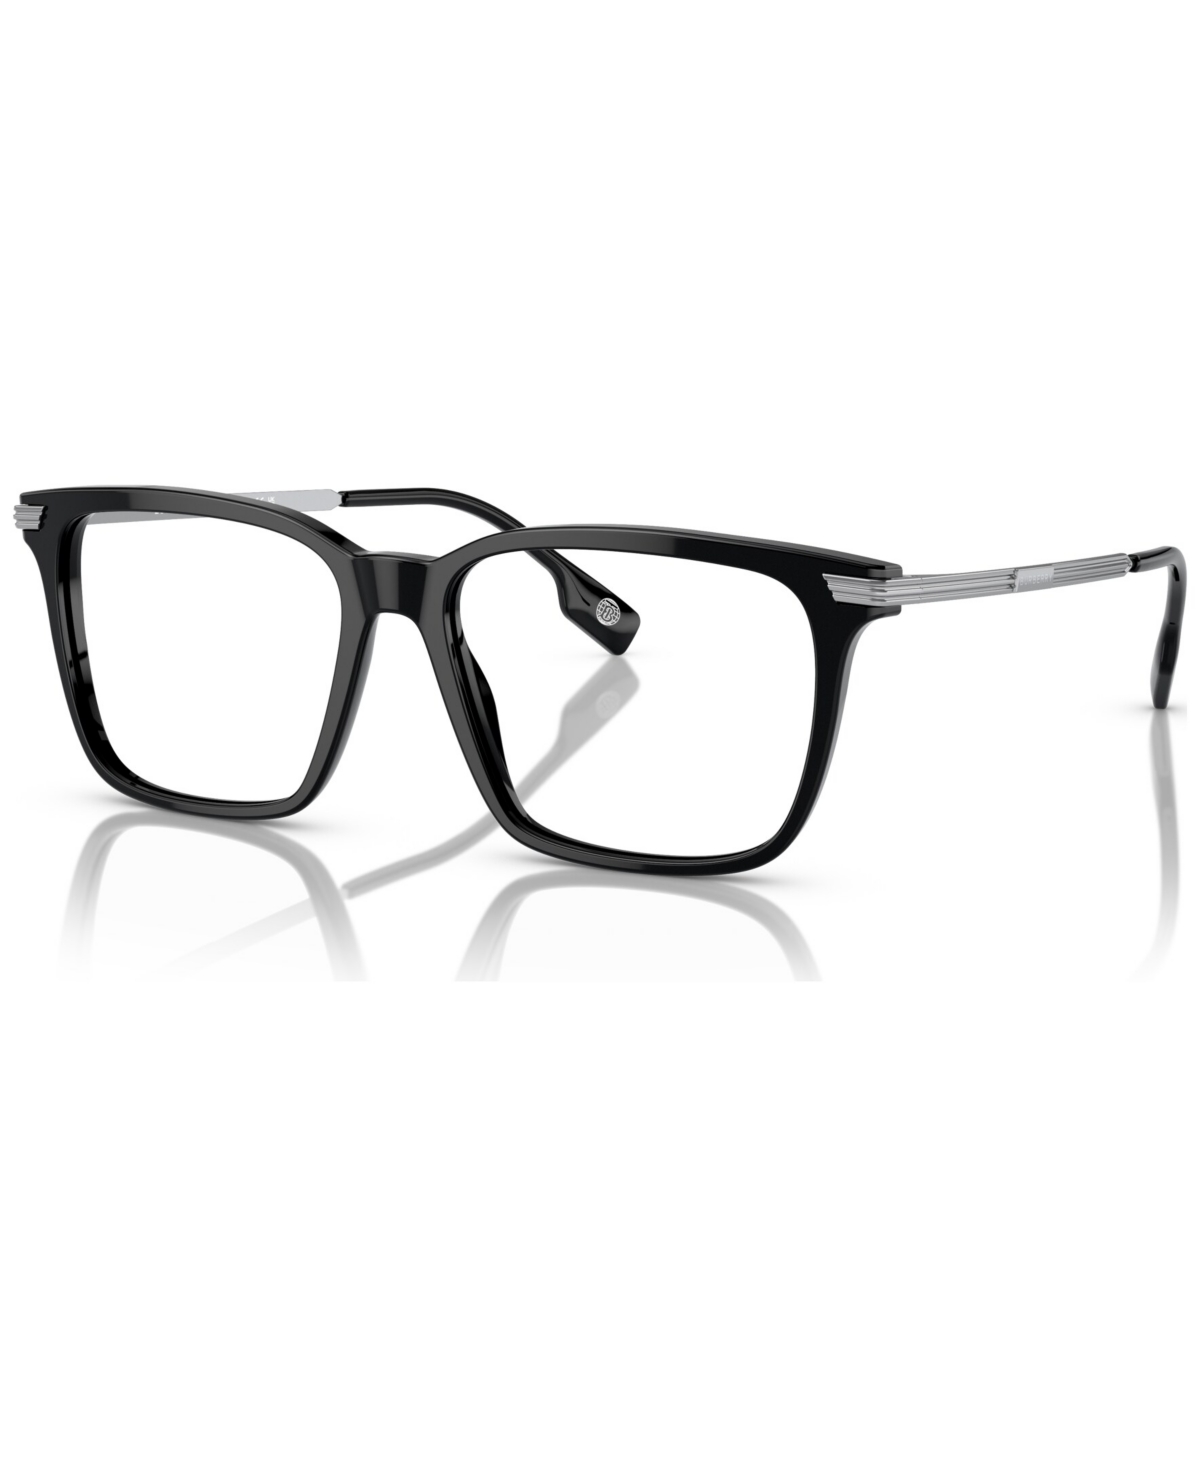 Men's Square Eyeglasses, BE2378 55 - Dark Havana